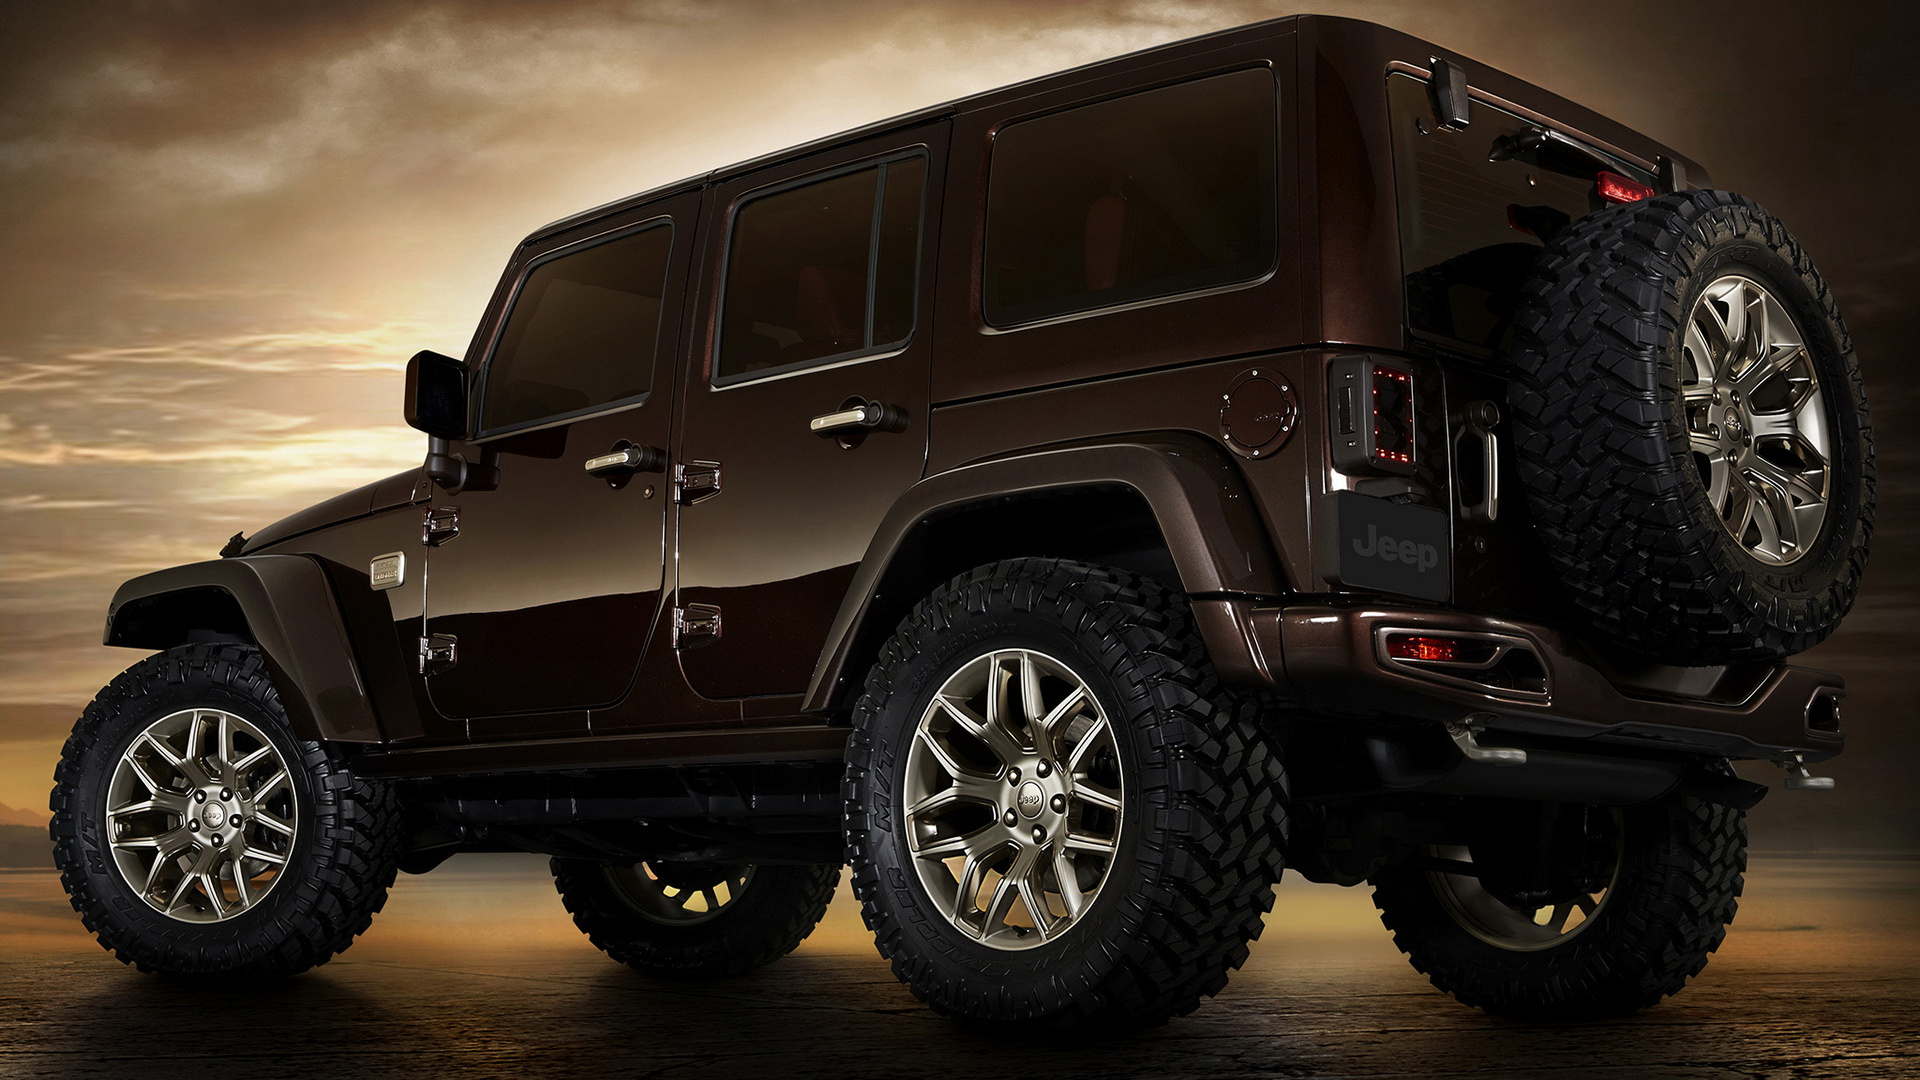 Télécharger des fonds d'écran Concept Jeep Wrangler Sundancer HD